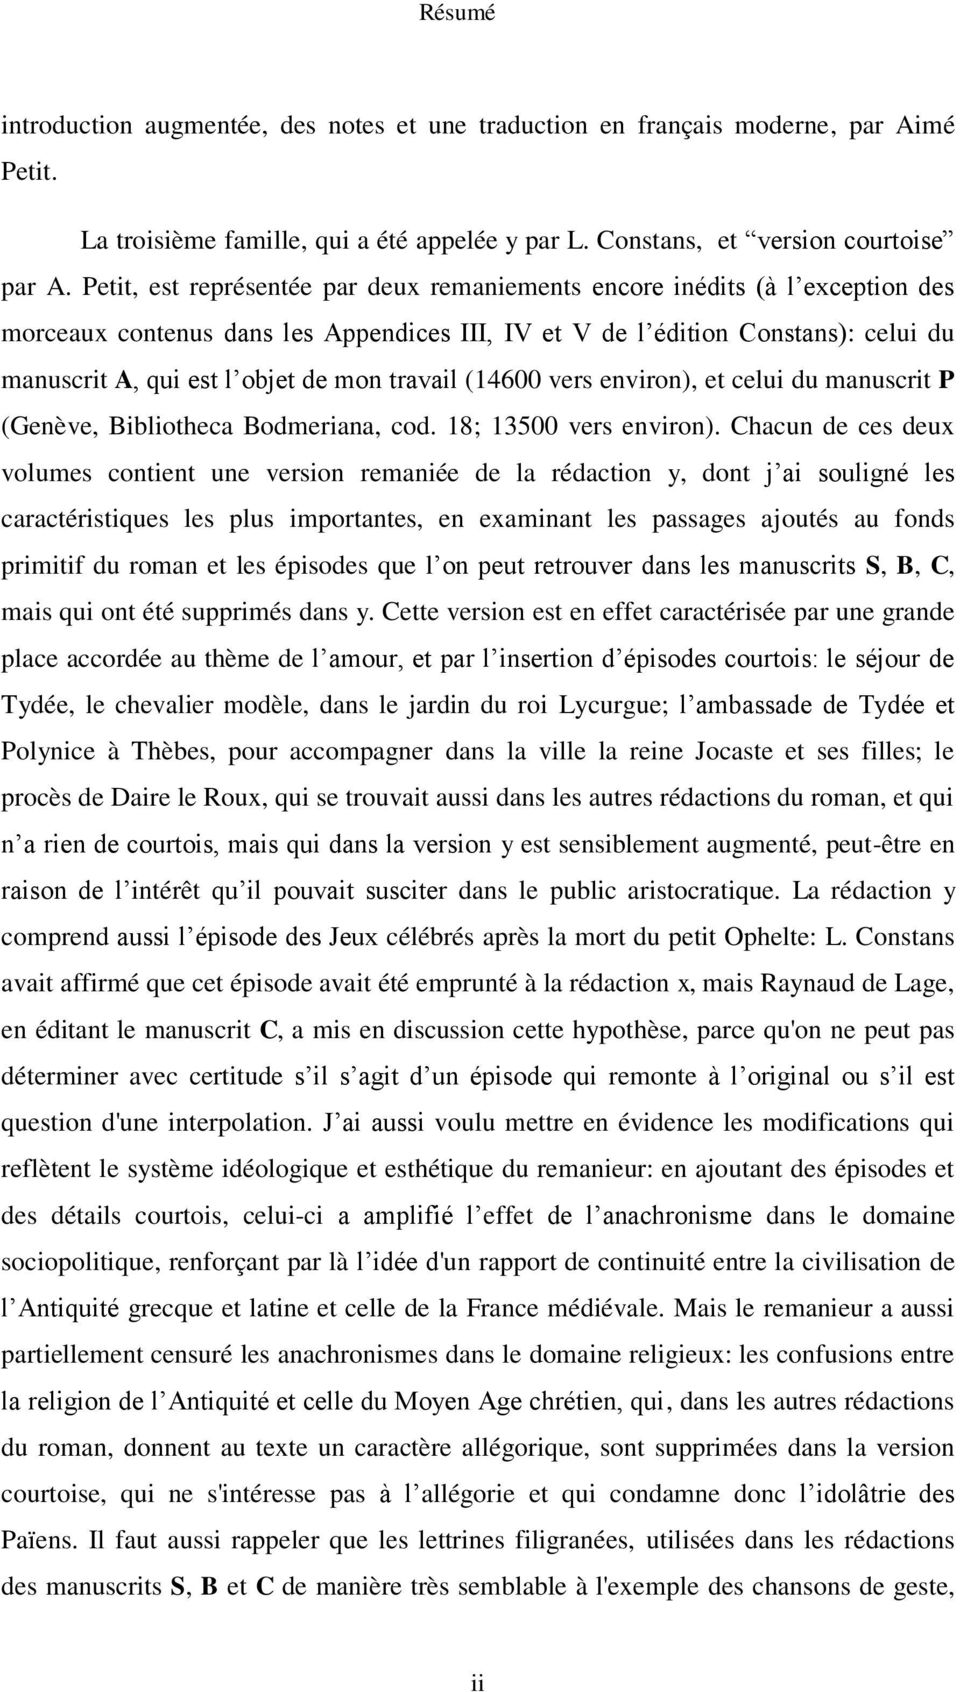 travail (14600 vers environ), et celui du manuscrit P (Genève, Bibliotheca Bodmeriana, cod. 18; 13500 vers environ).